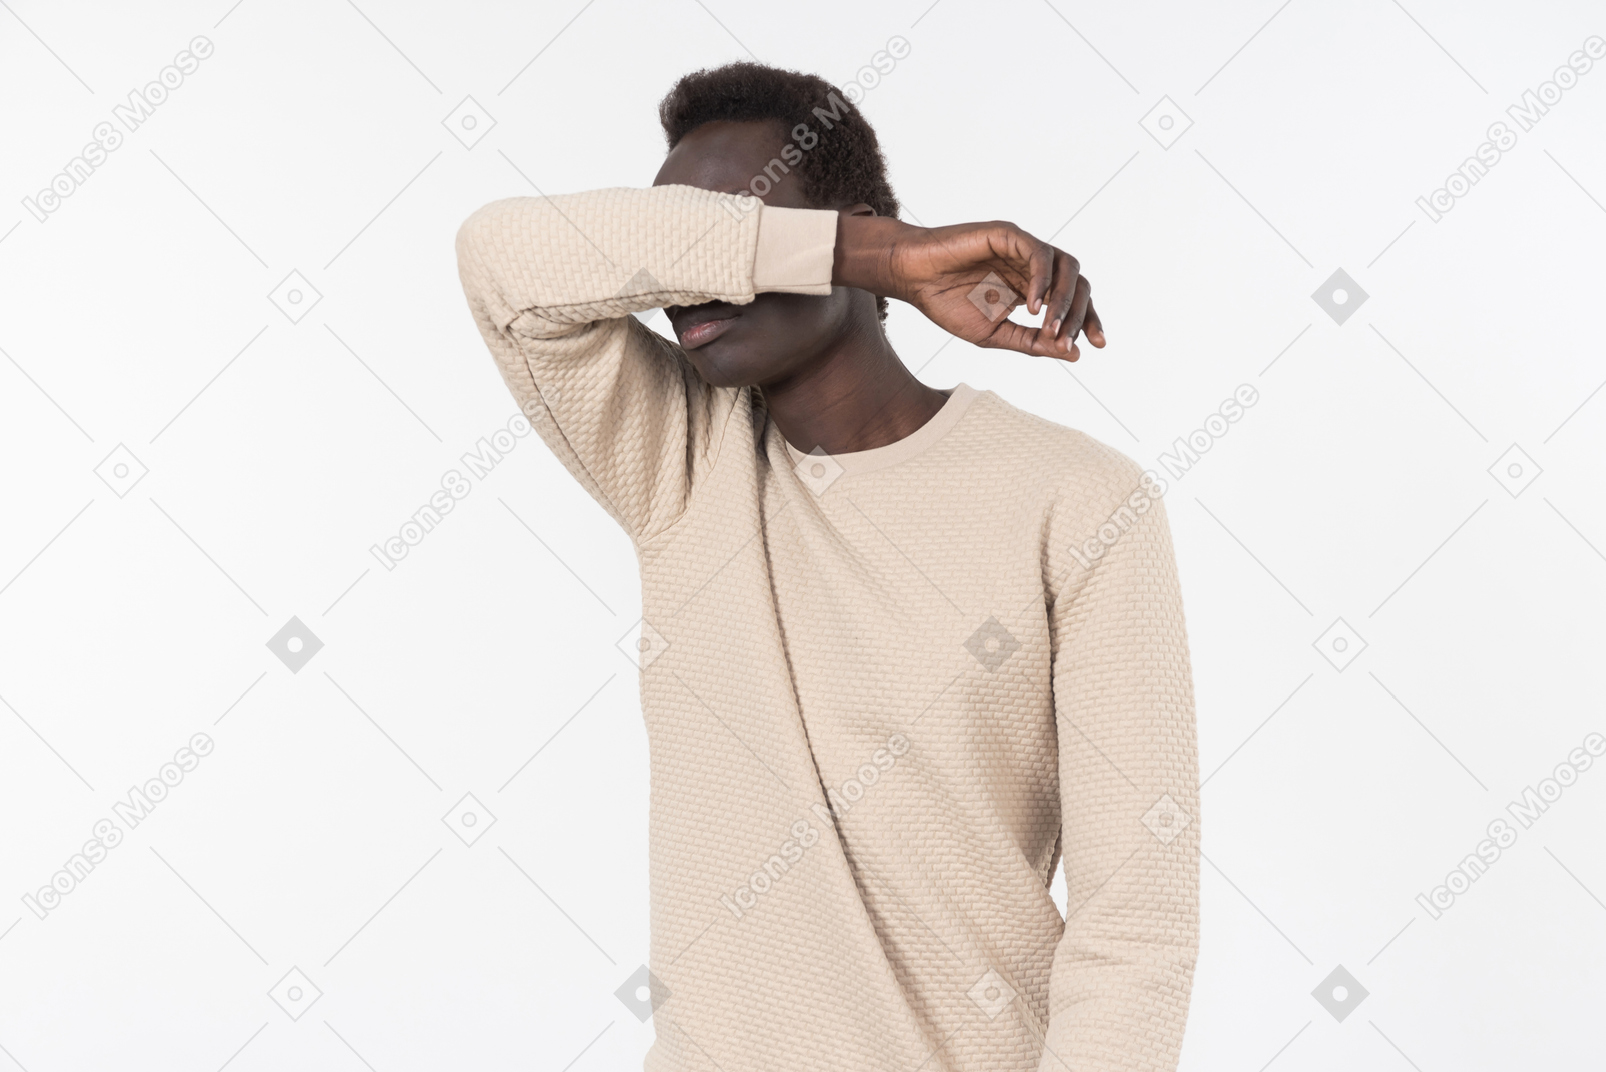 Un joven negro en un suéter gris de pie solo sobre el fondo blanco.